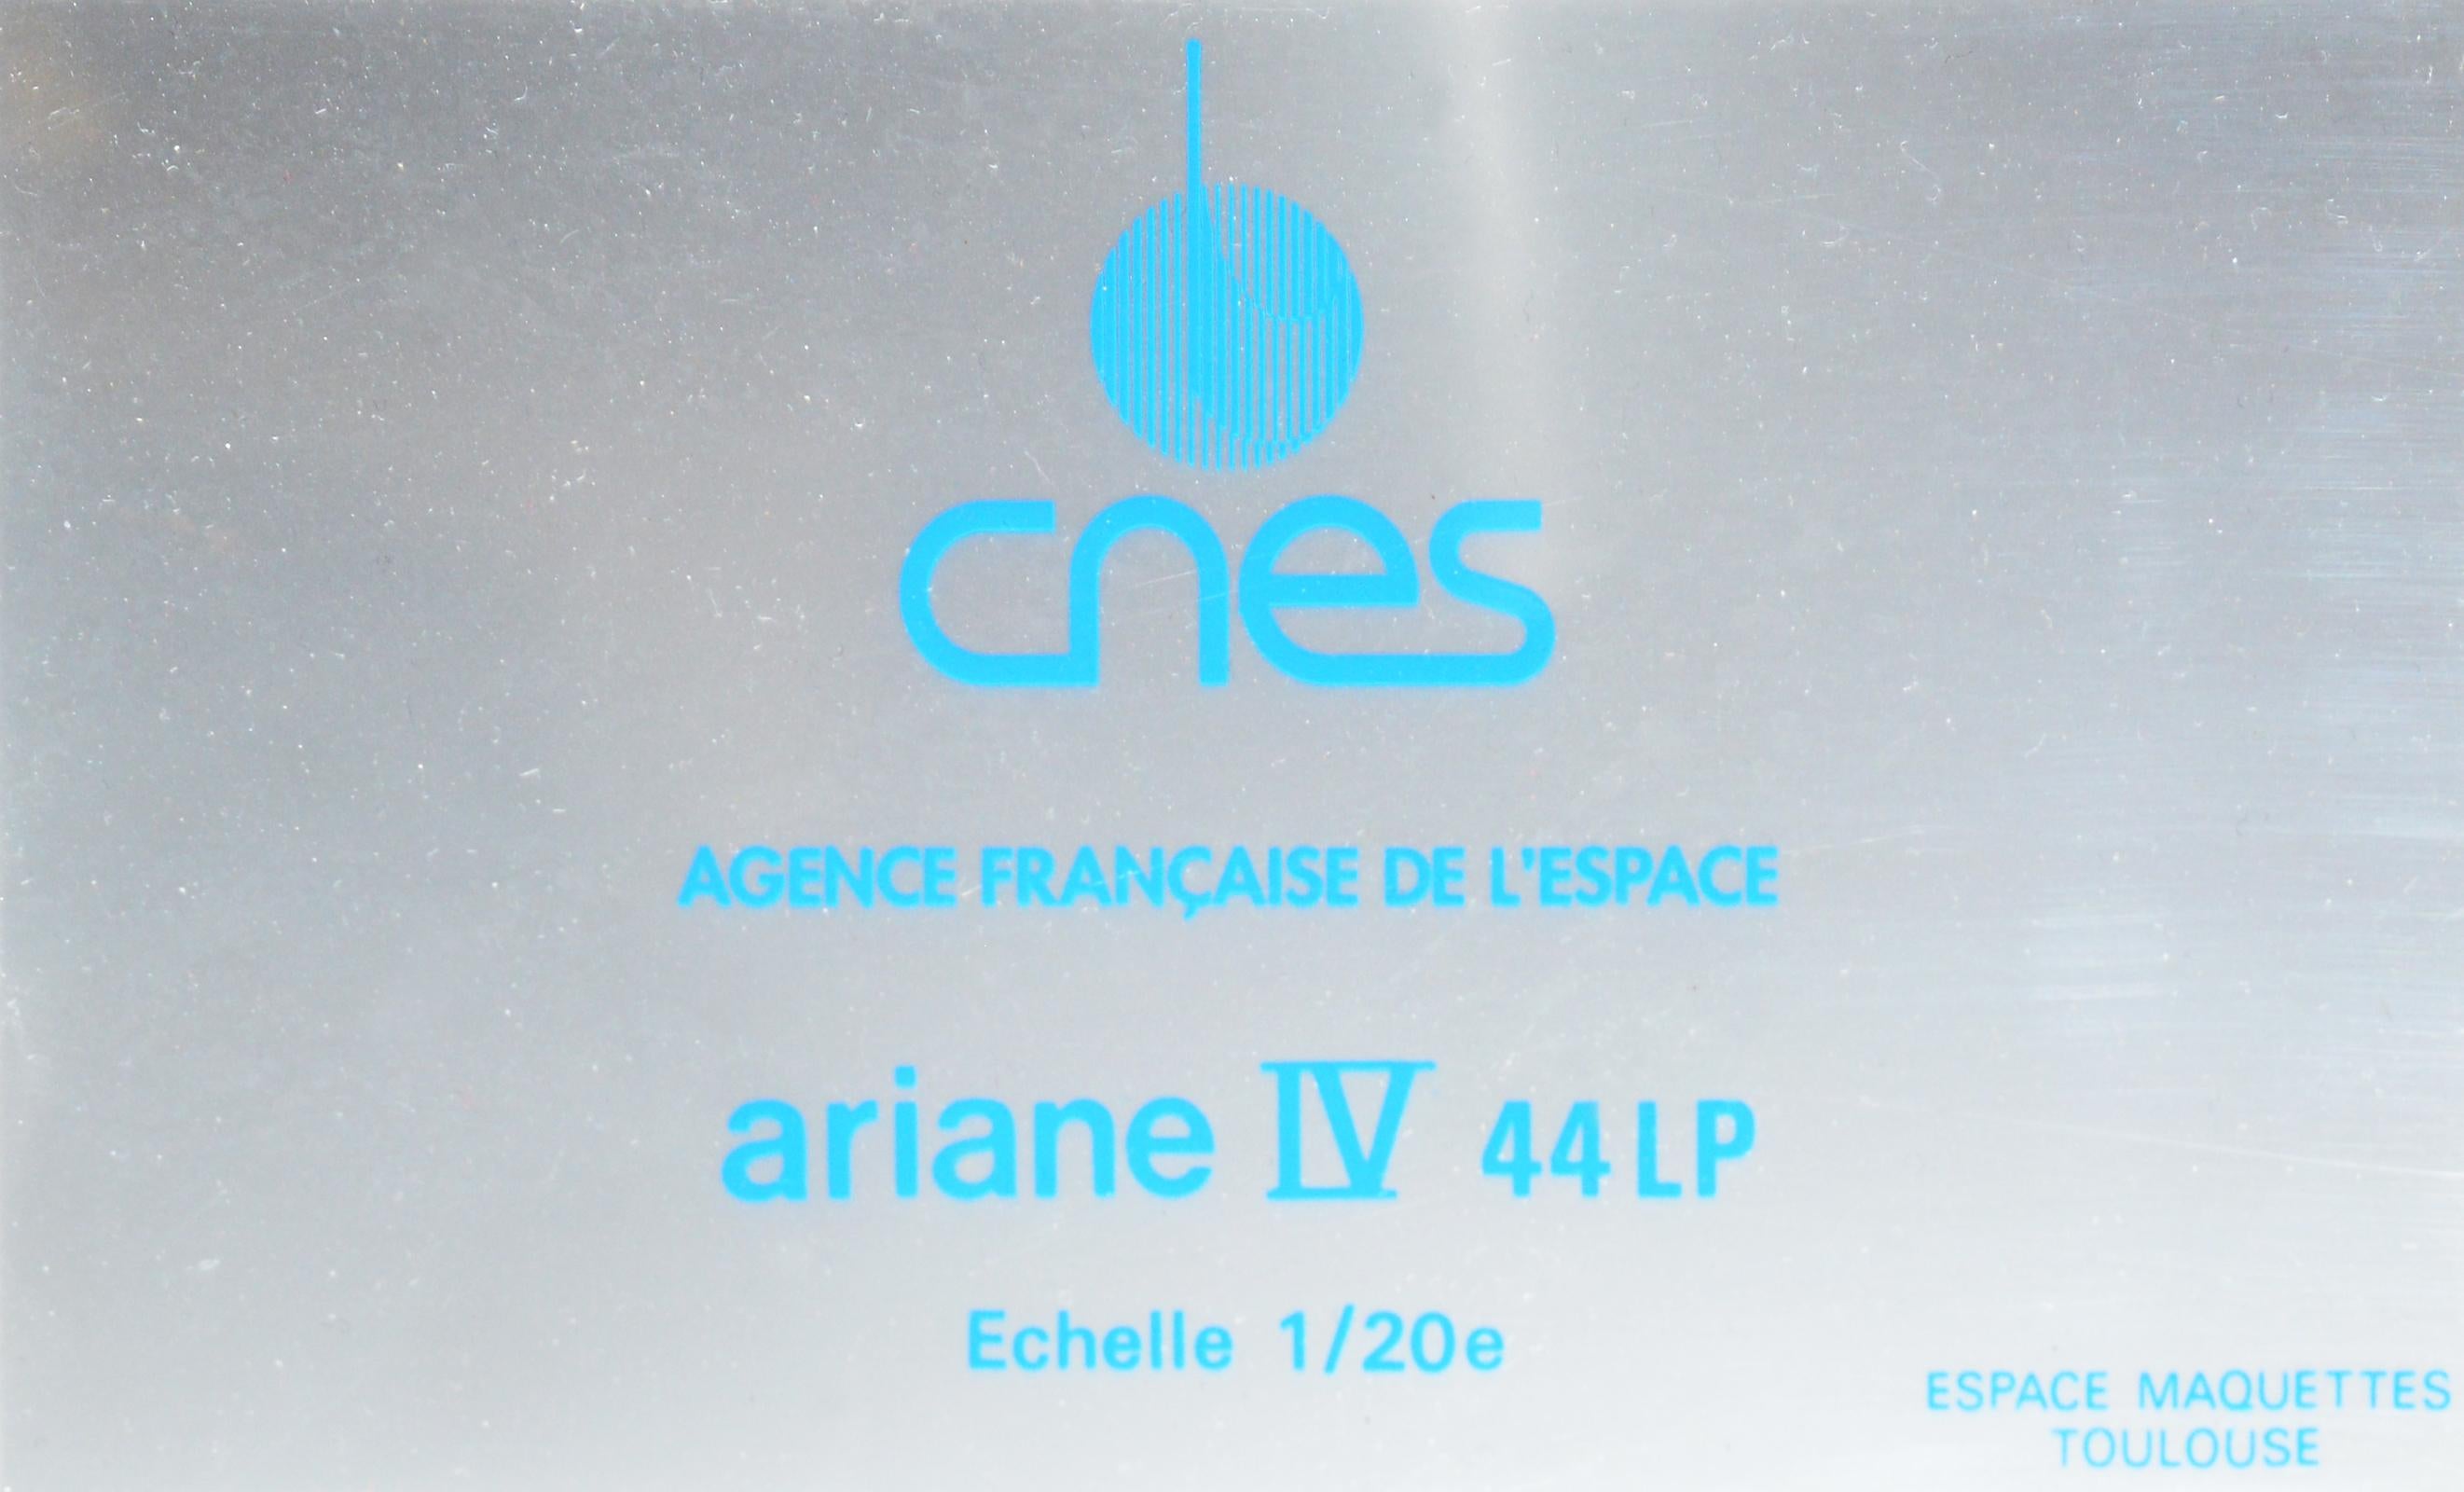 Ariane IV 44lp Rocket Model on 1/20em Scale For Sale 2